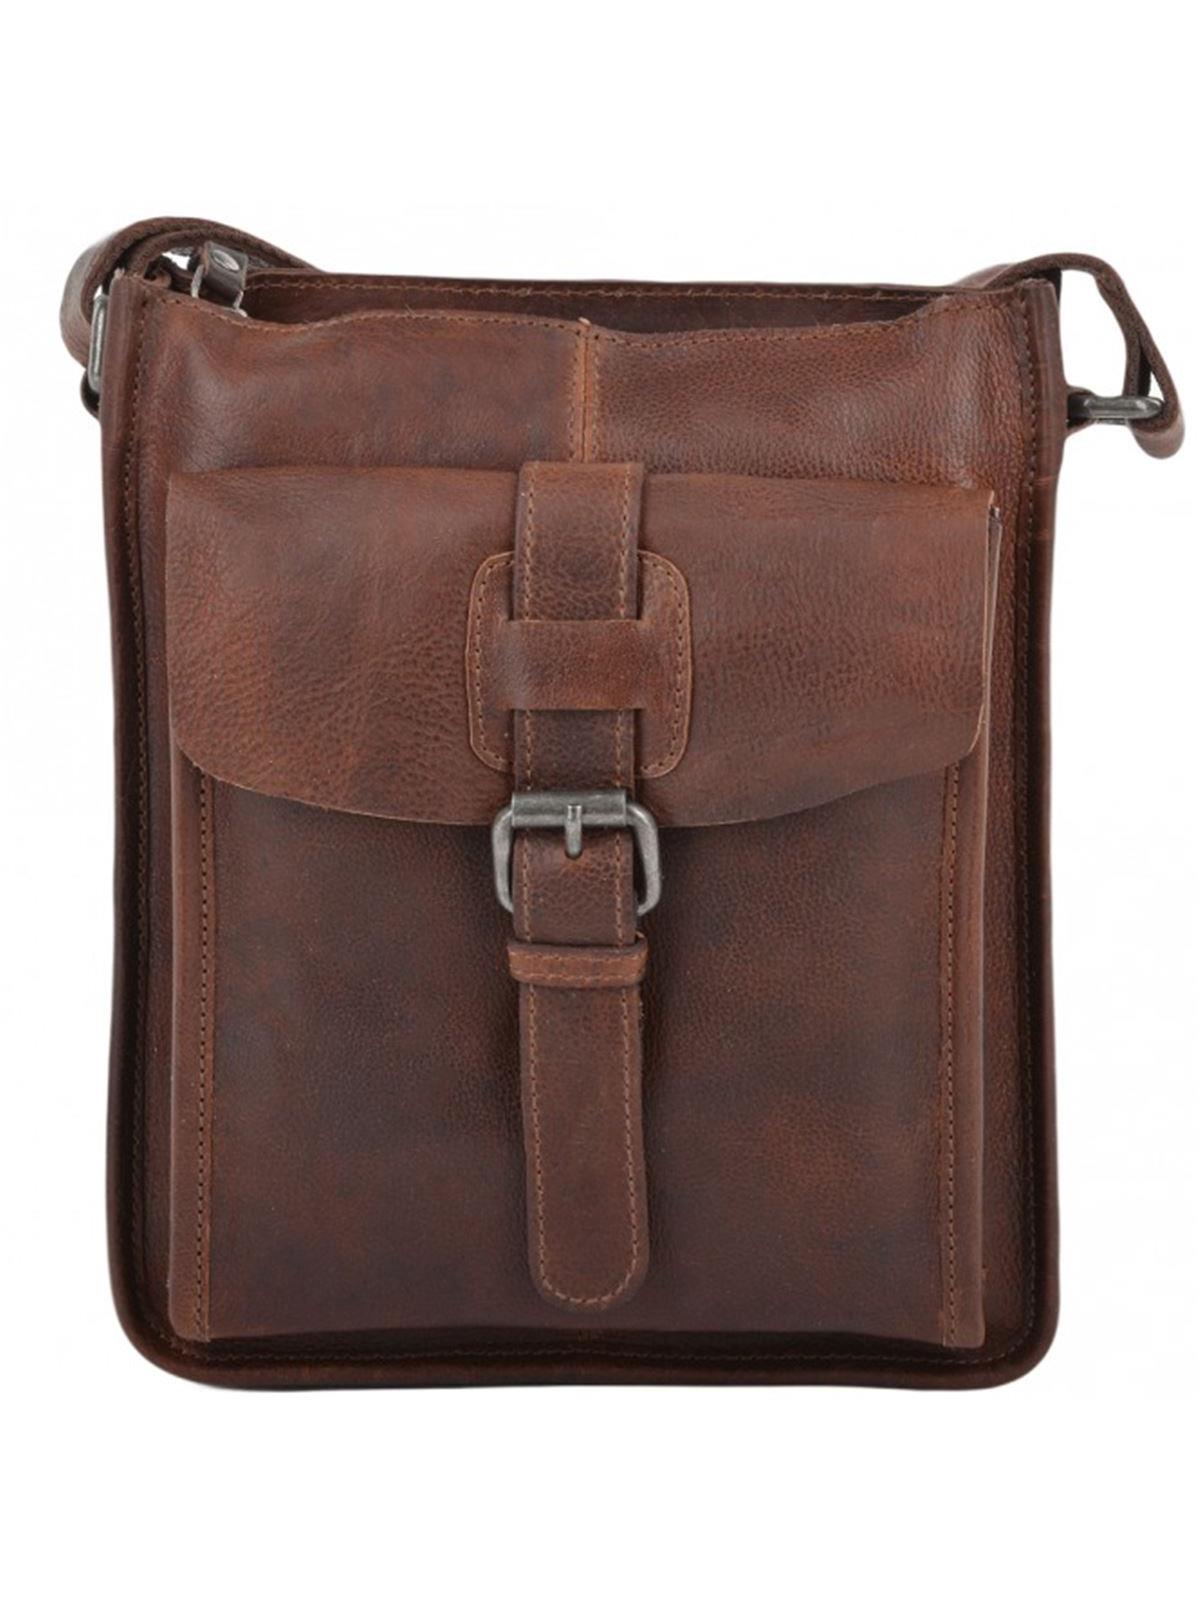 Leather Messenger for Men Cross Body Bag Gift for Him Flap 